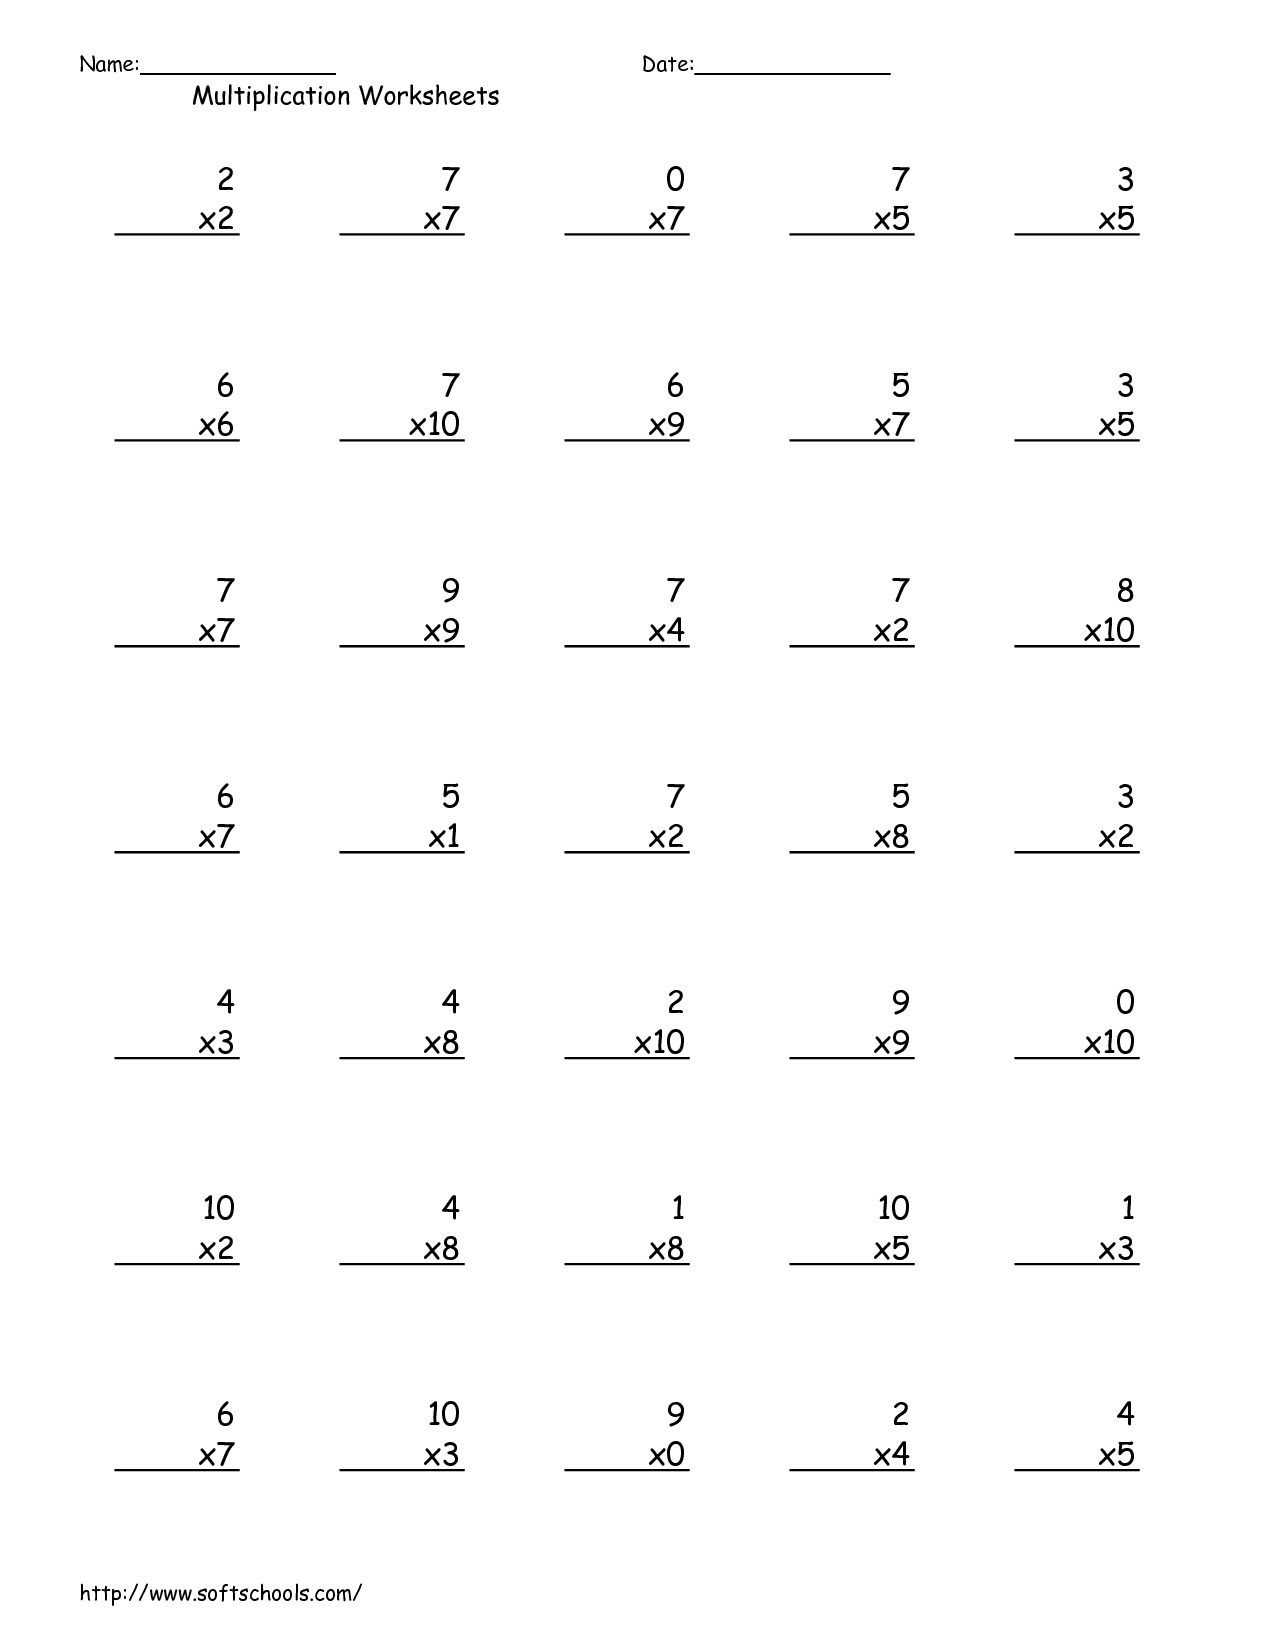 12-best-images-of-multiplication-worksheets-1-11-100-question-multiplication-worksheet-1-10-2